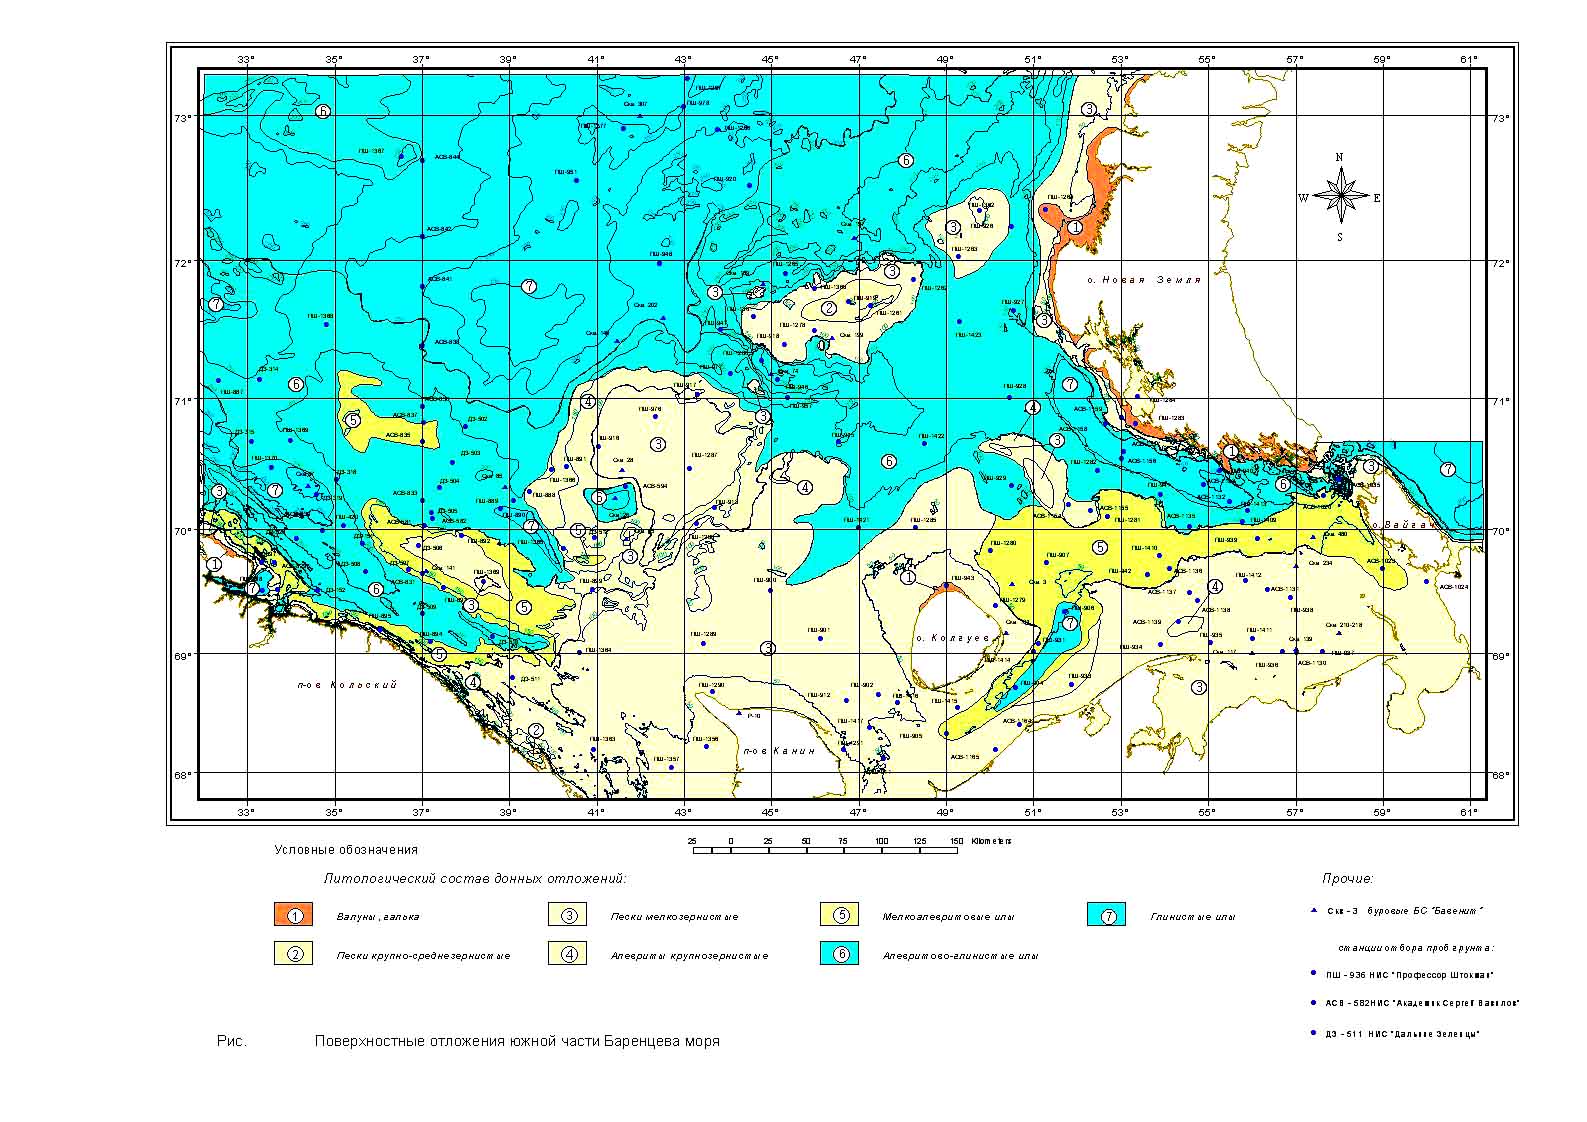 Отложения морского дна Баренцева моря